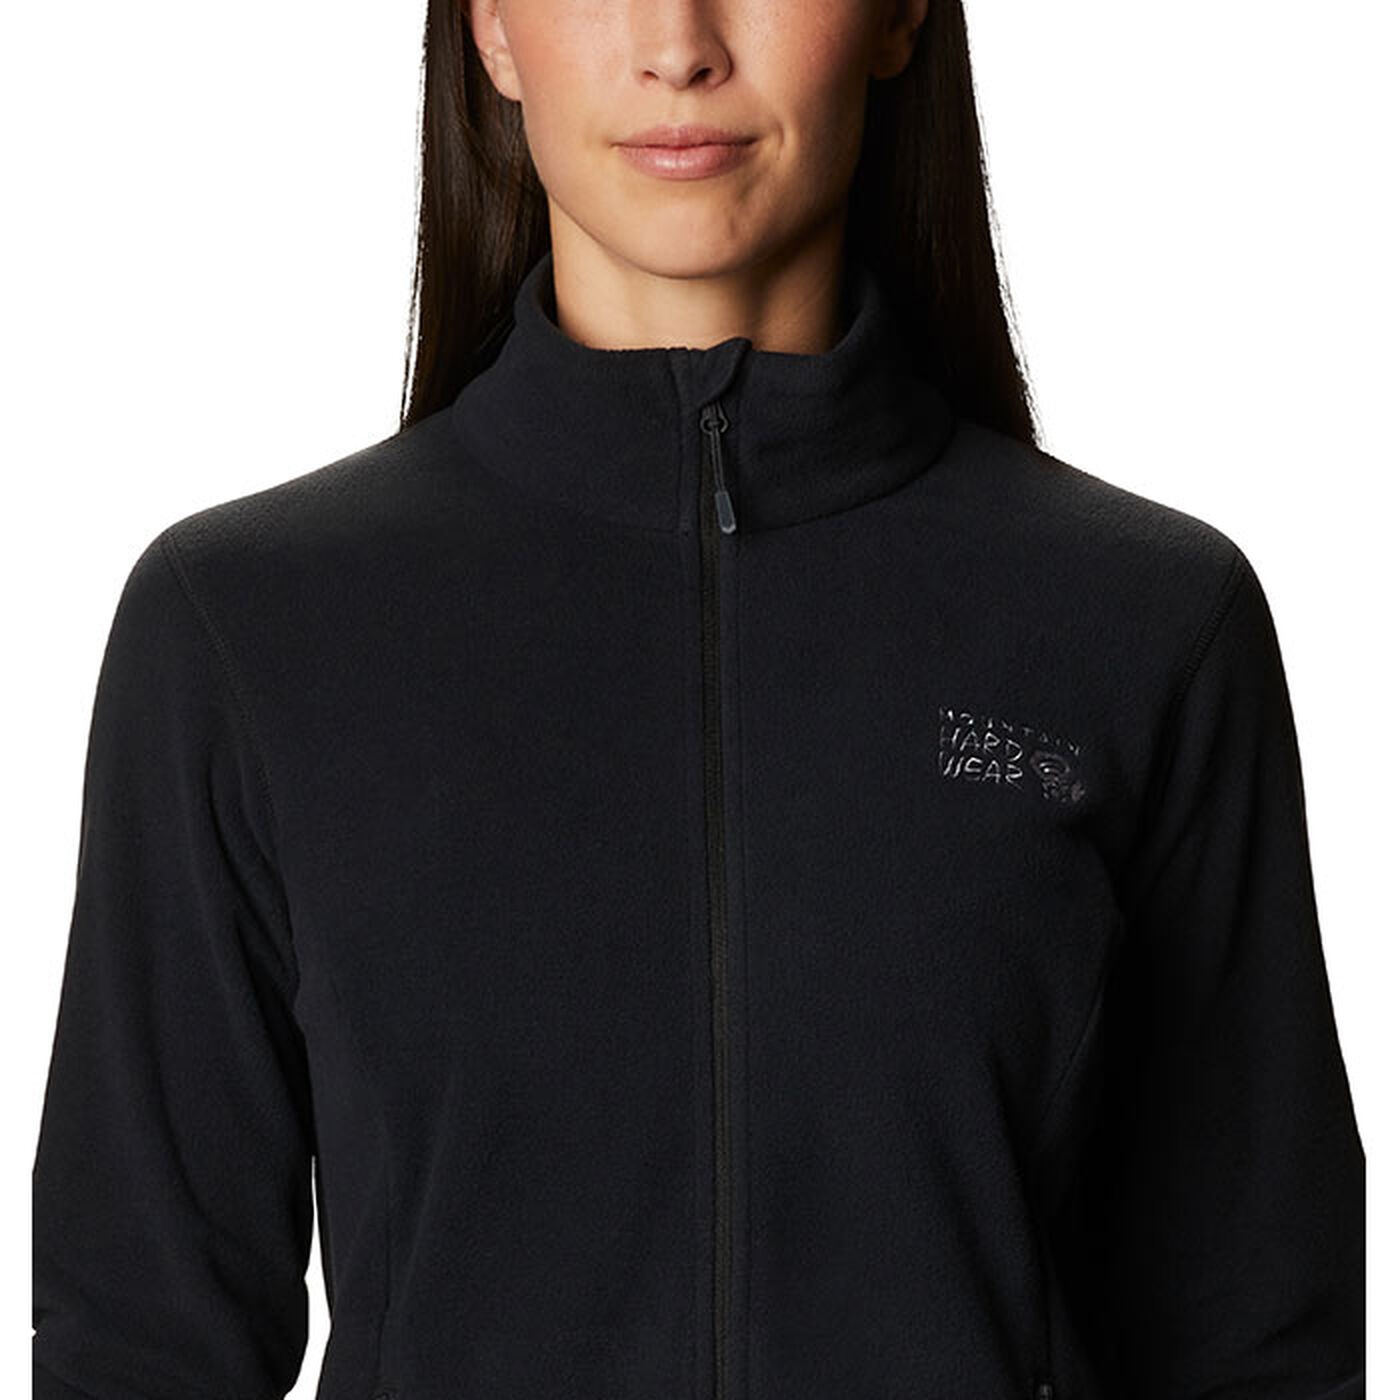 Women's Wintun Fleece Jacket | Mountain Hardwear | Sporting Life Online